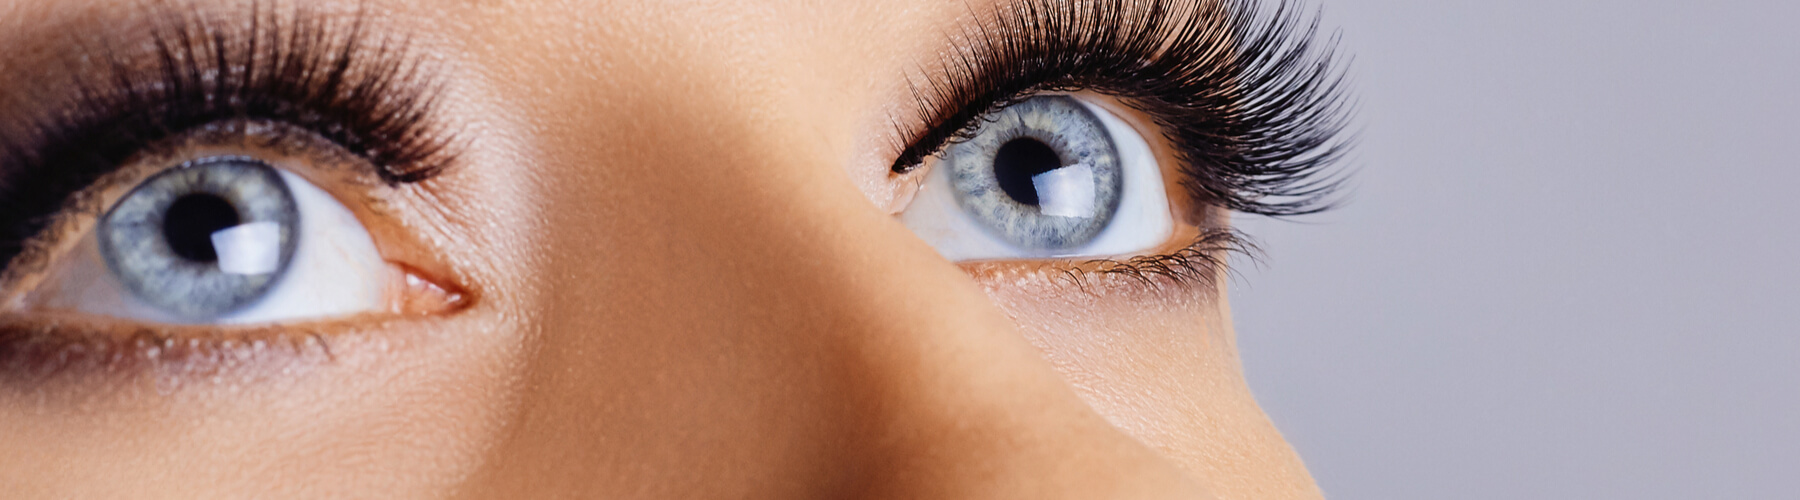 Woman eyes with long eyelashes and smokey eyes make-up, full or thick eyelashes